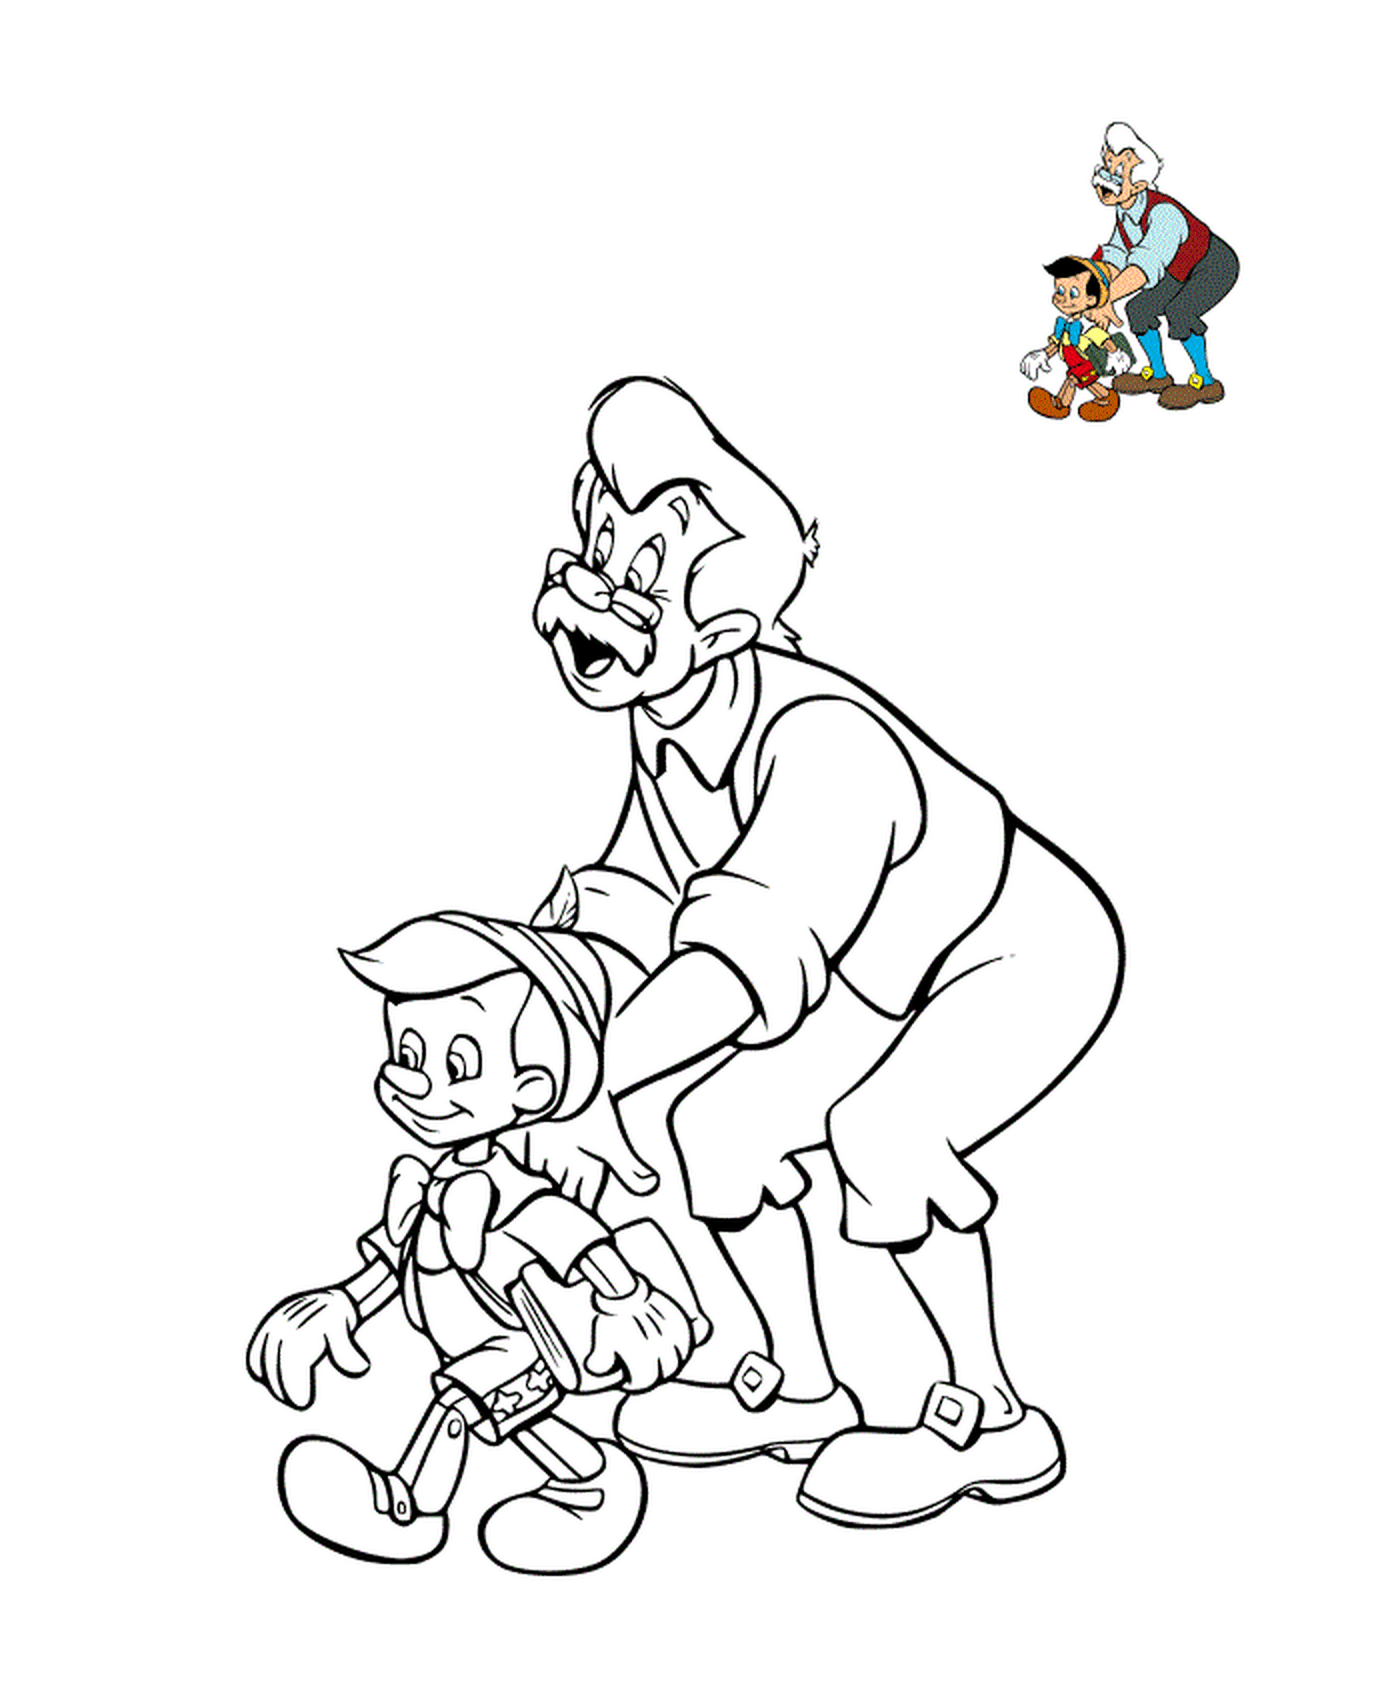  和他的孩子,皮诺曹 一起玩木偶 